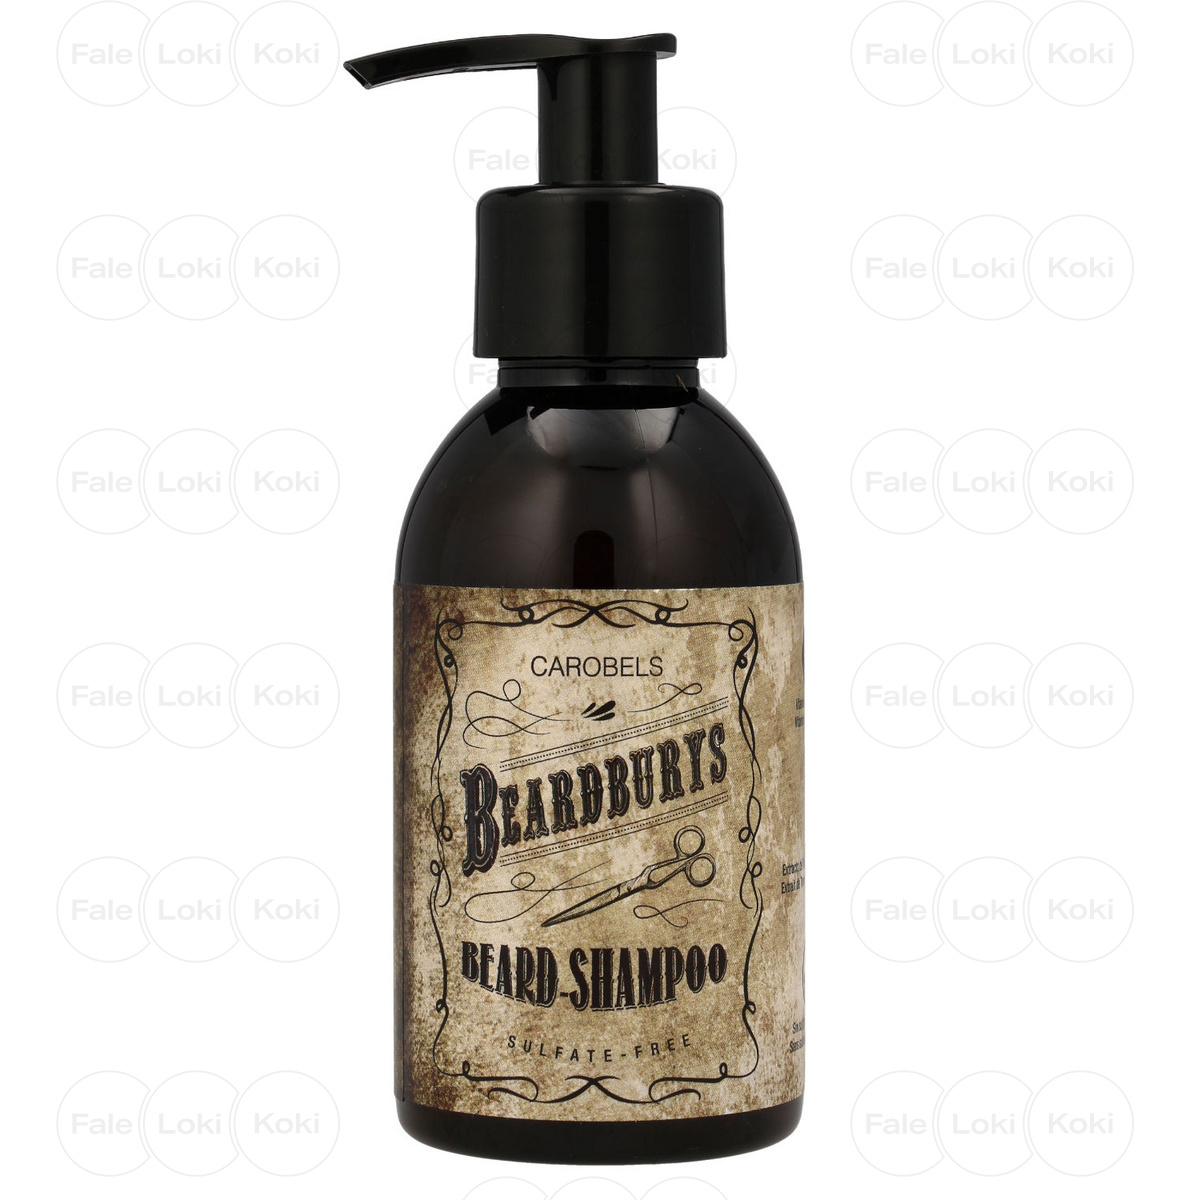 szampon faberlic efekty przeciw wypada